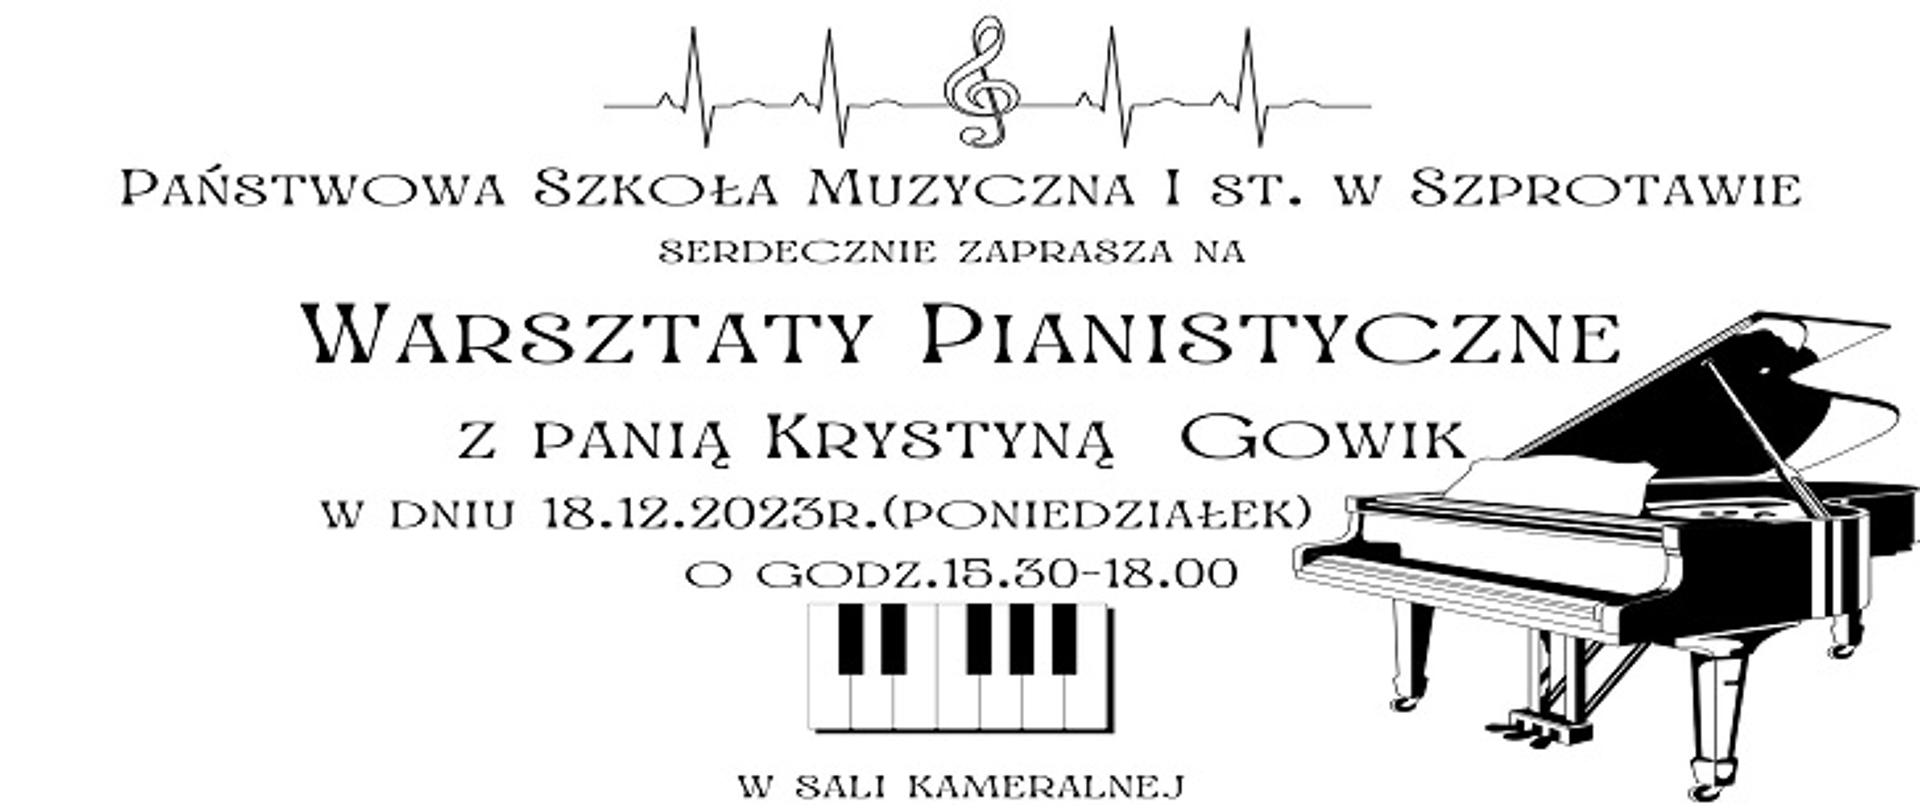  Państwowa Szkoła Muzyczna I st. w Szprotawie serdecznie zaprasza na Warsztaty Pianistyczne z panią Krystyną Gowik, w dniu 18.12.2023 (poniedziałek) o godz. 15,30-18.00 w sali kameralnej.